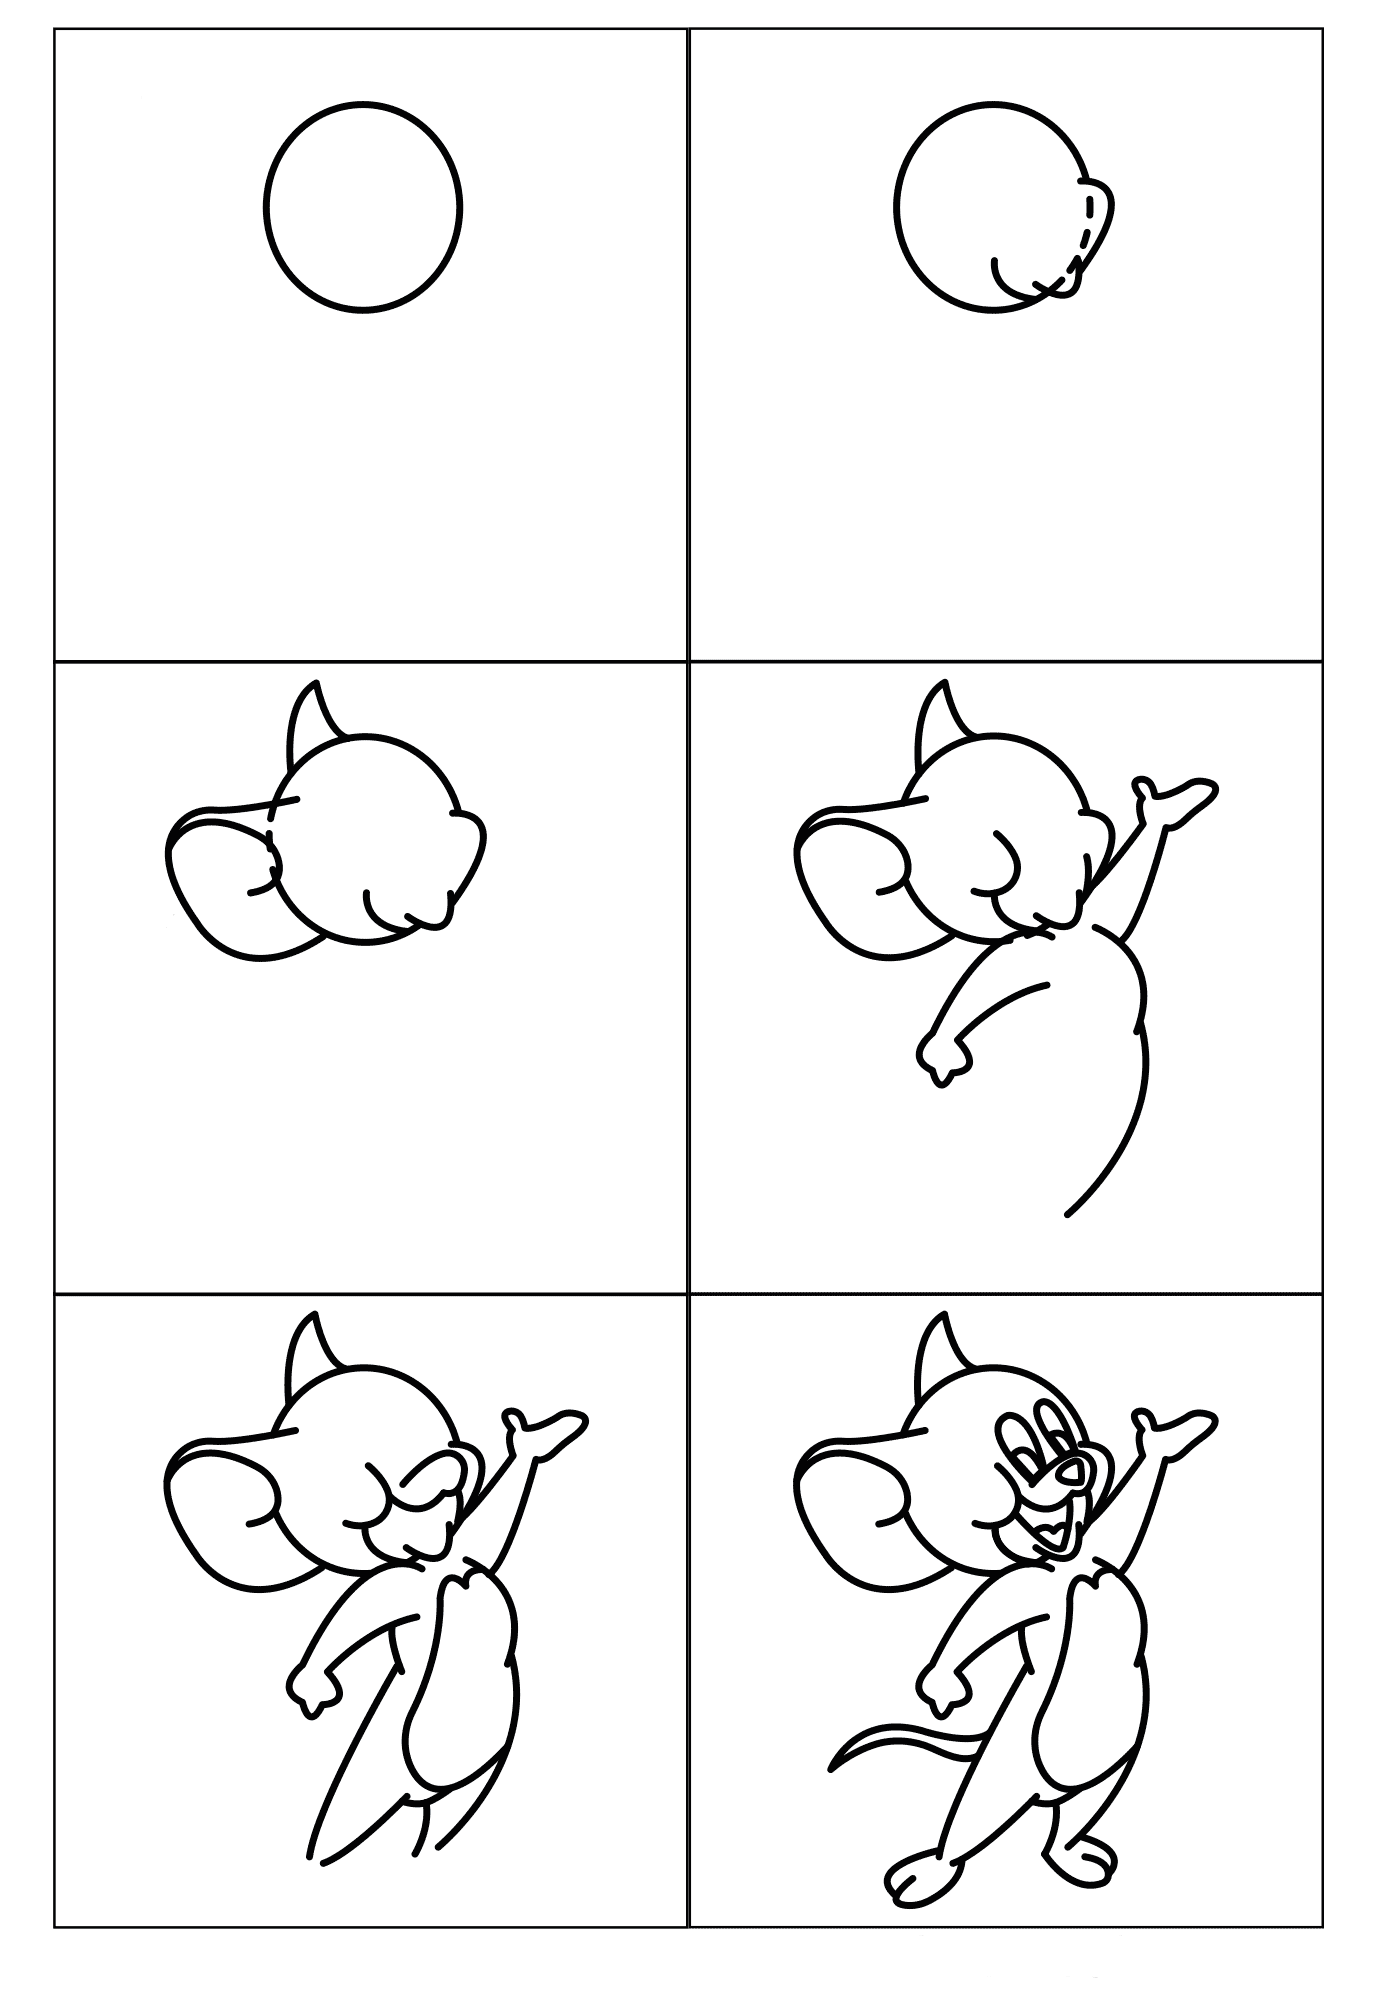 Jerry-hiiren piirtäminen yksinkertaista (2) piirustus